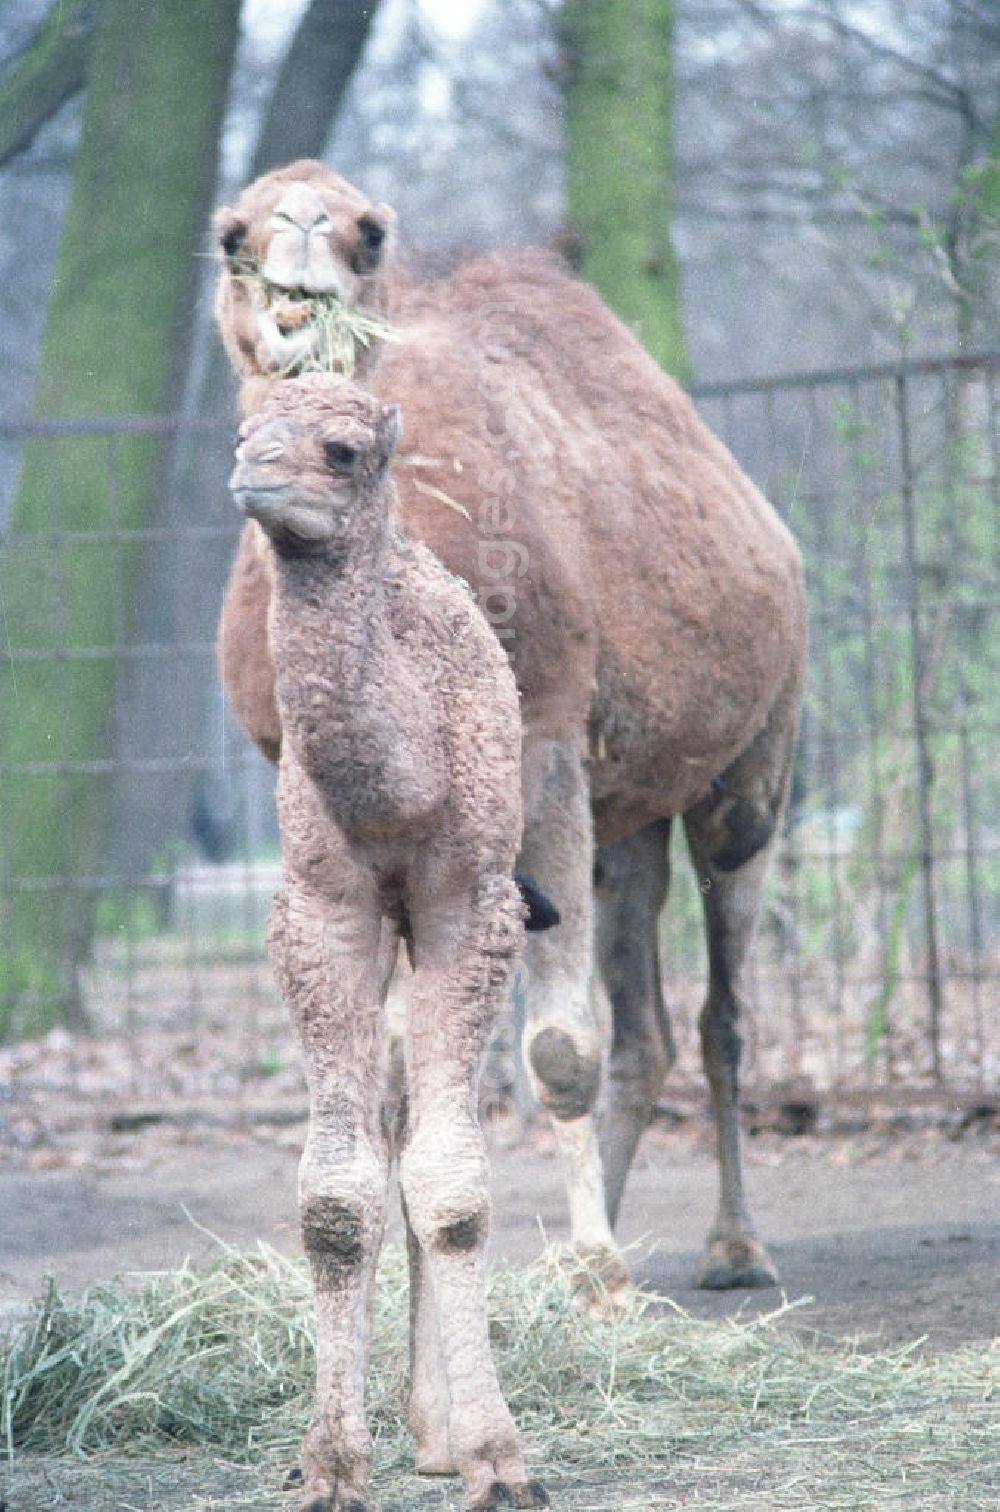 GDR picture archive: Berlin - Kamele / Dromedare im Tierpark Berlin-Friedrichsfelde. Ein Jungtier steht vor seiner Mutter.